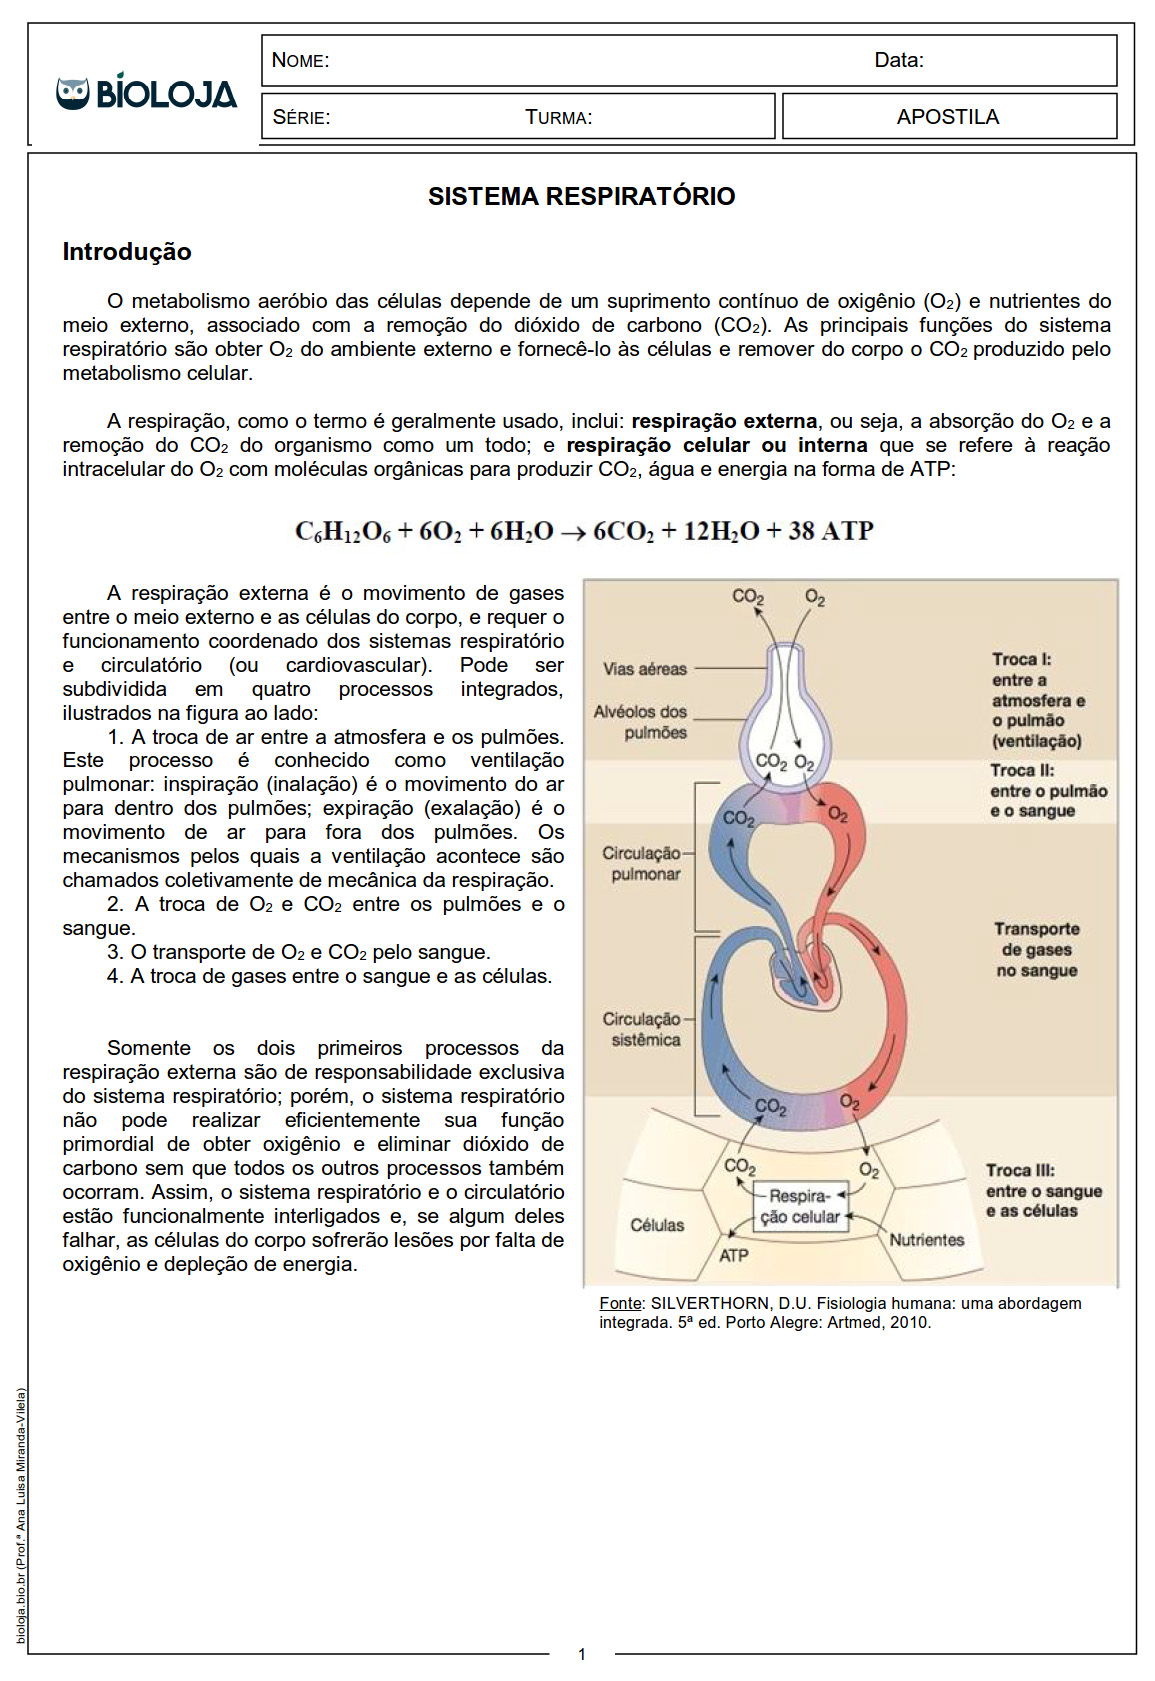 Apostila Fisiologia de órgãos e sistema III: sistema respiratório slide 1